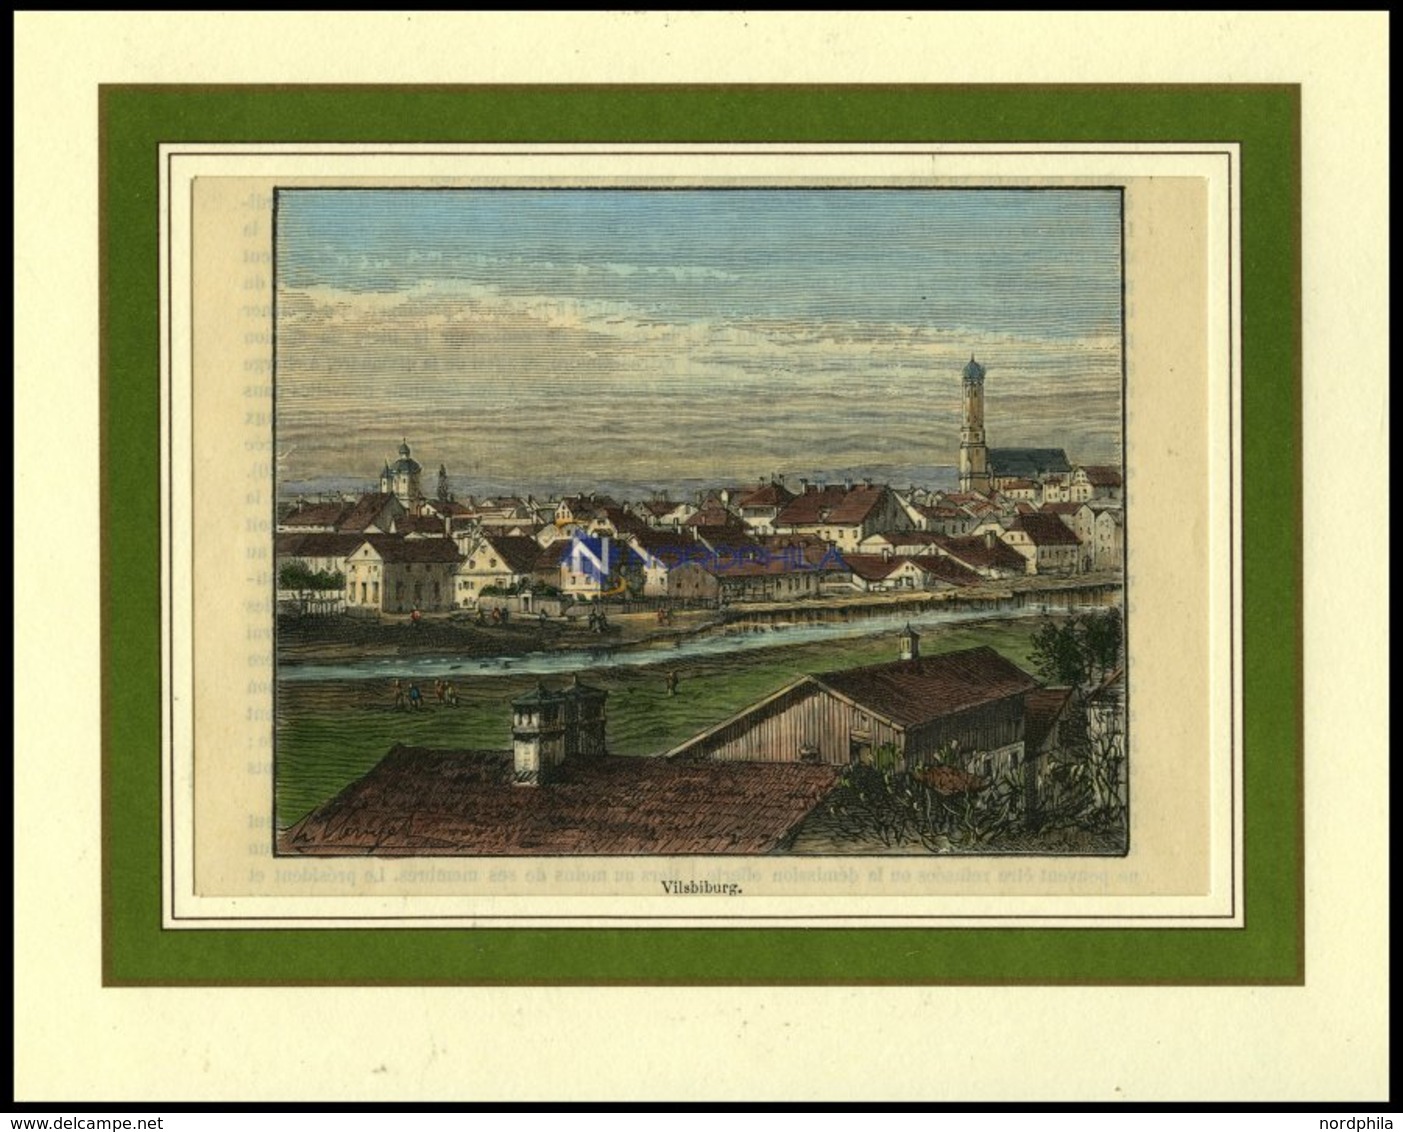 VILSBURG, Teilansicht, Kolorierter Holzstich Aus Malte-Brun Um 1880 - Lithographies